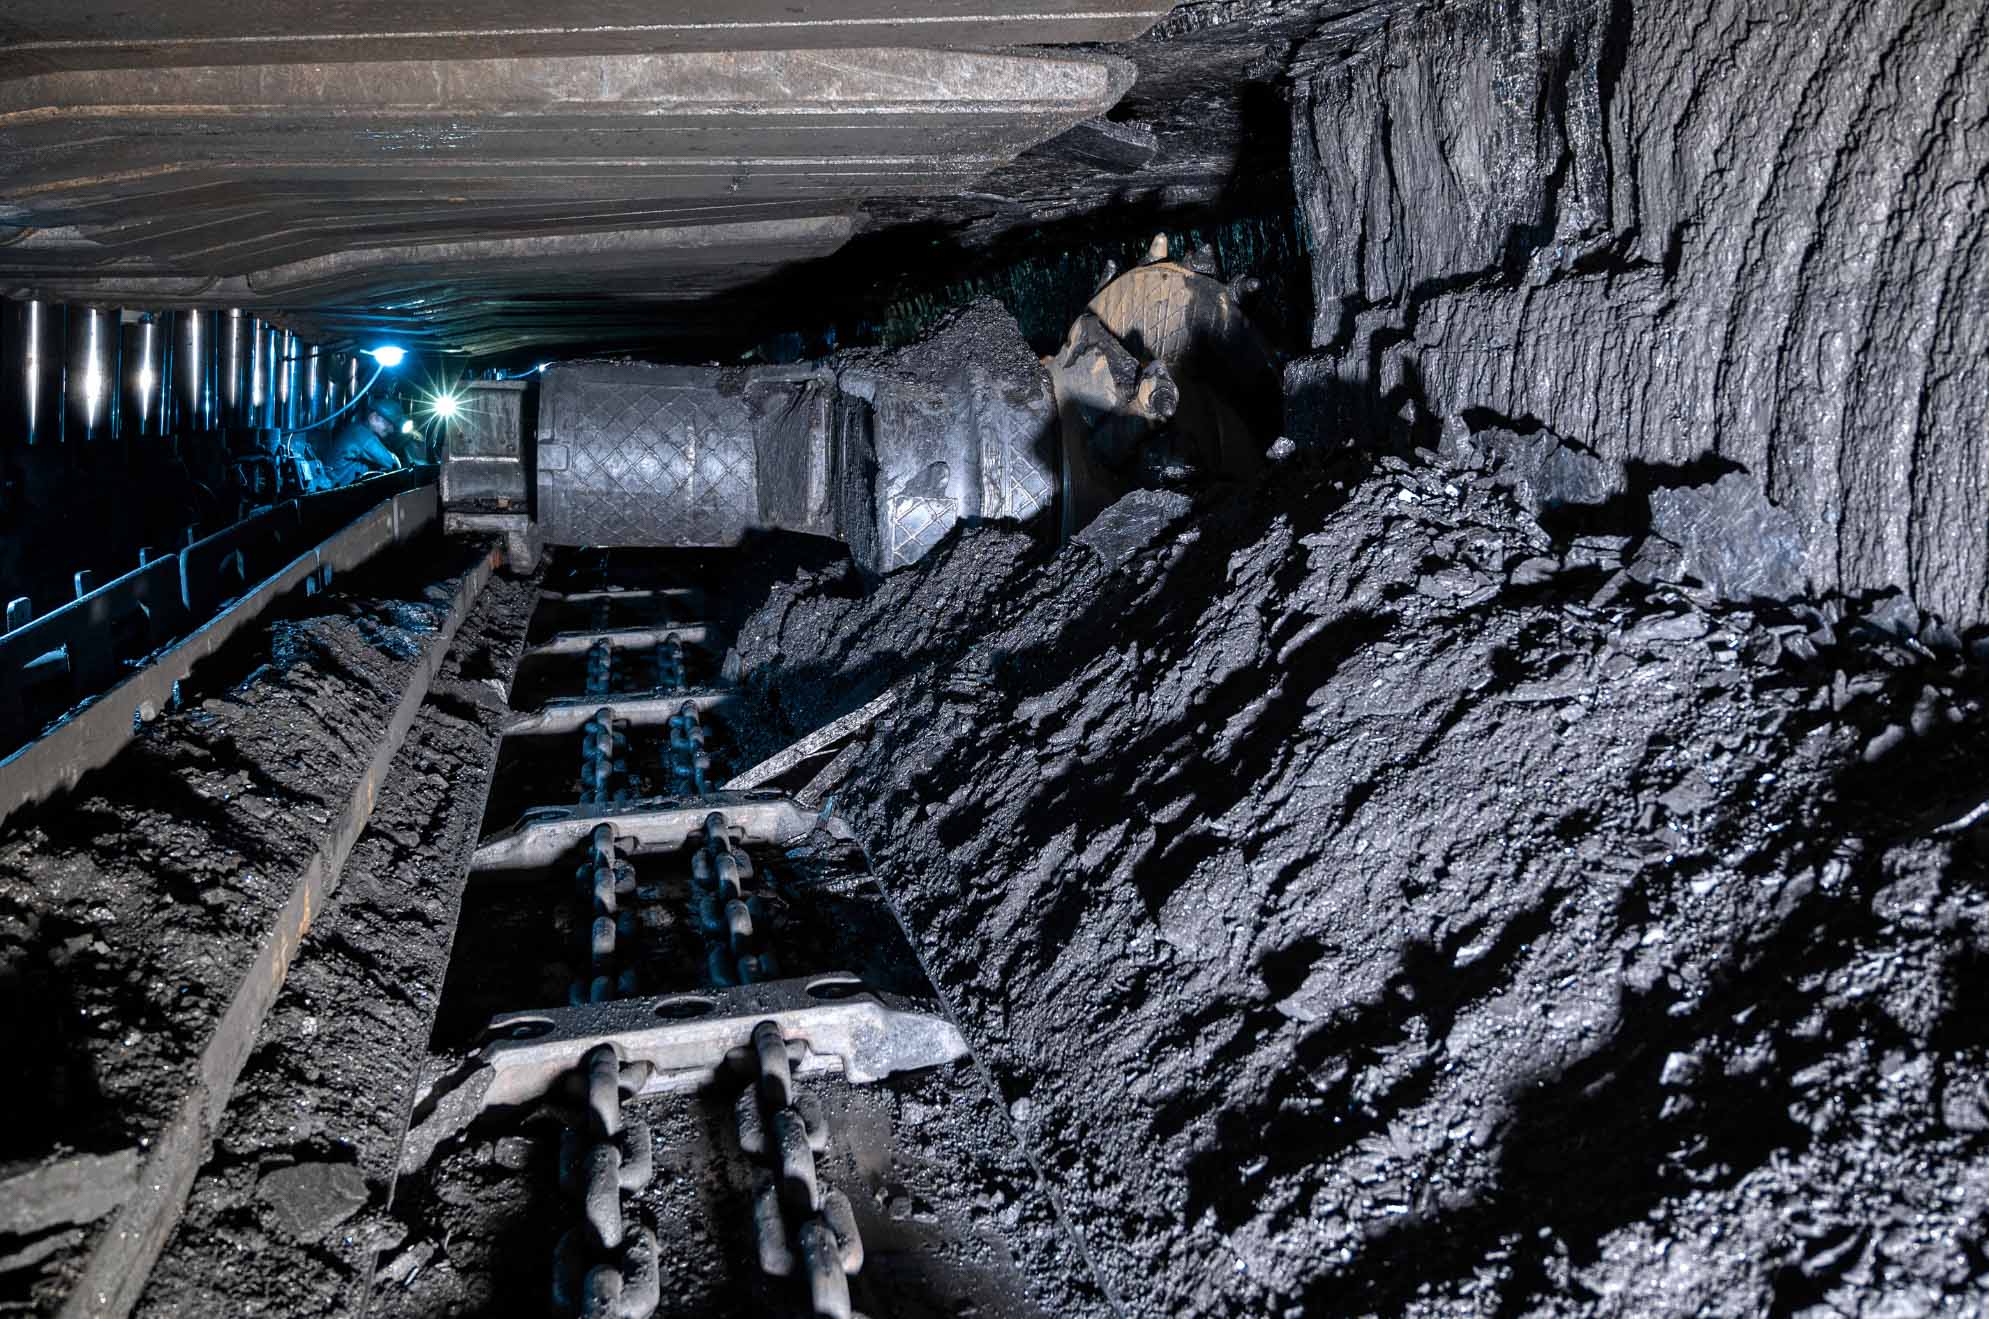 Underground coal mine